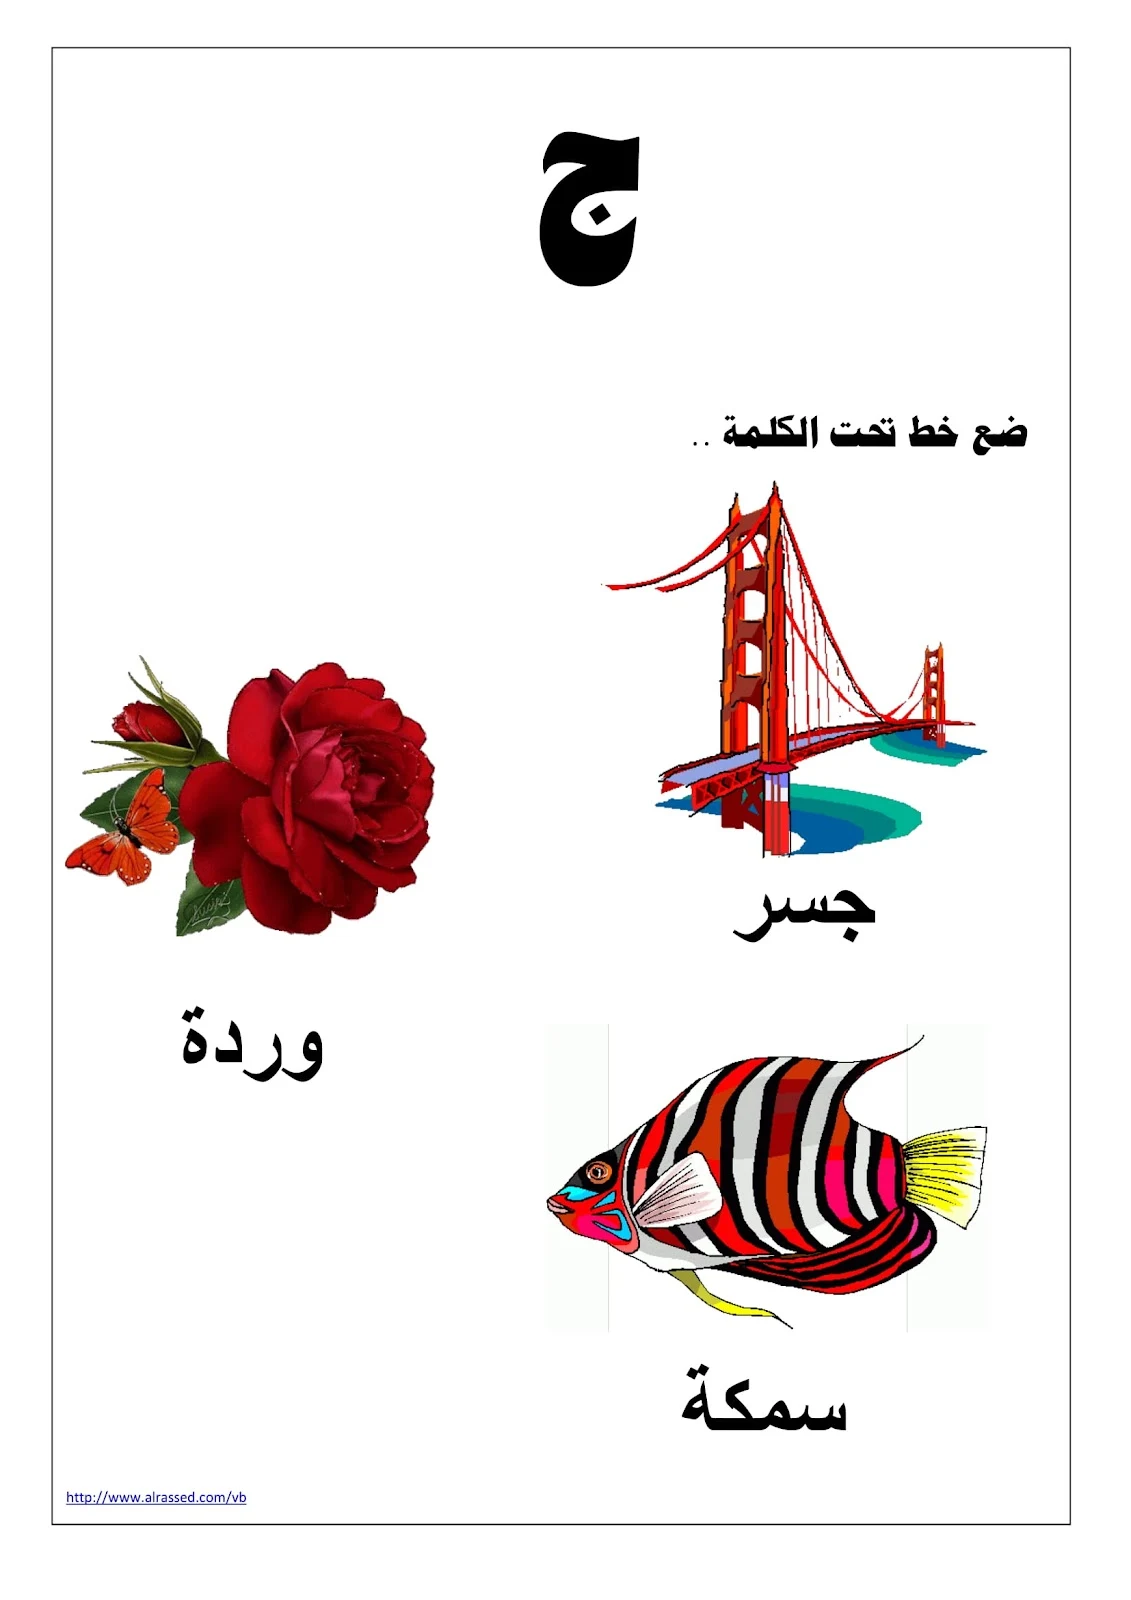 مذكرة تعليم اللغة العربية للاطفال pdf